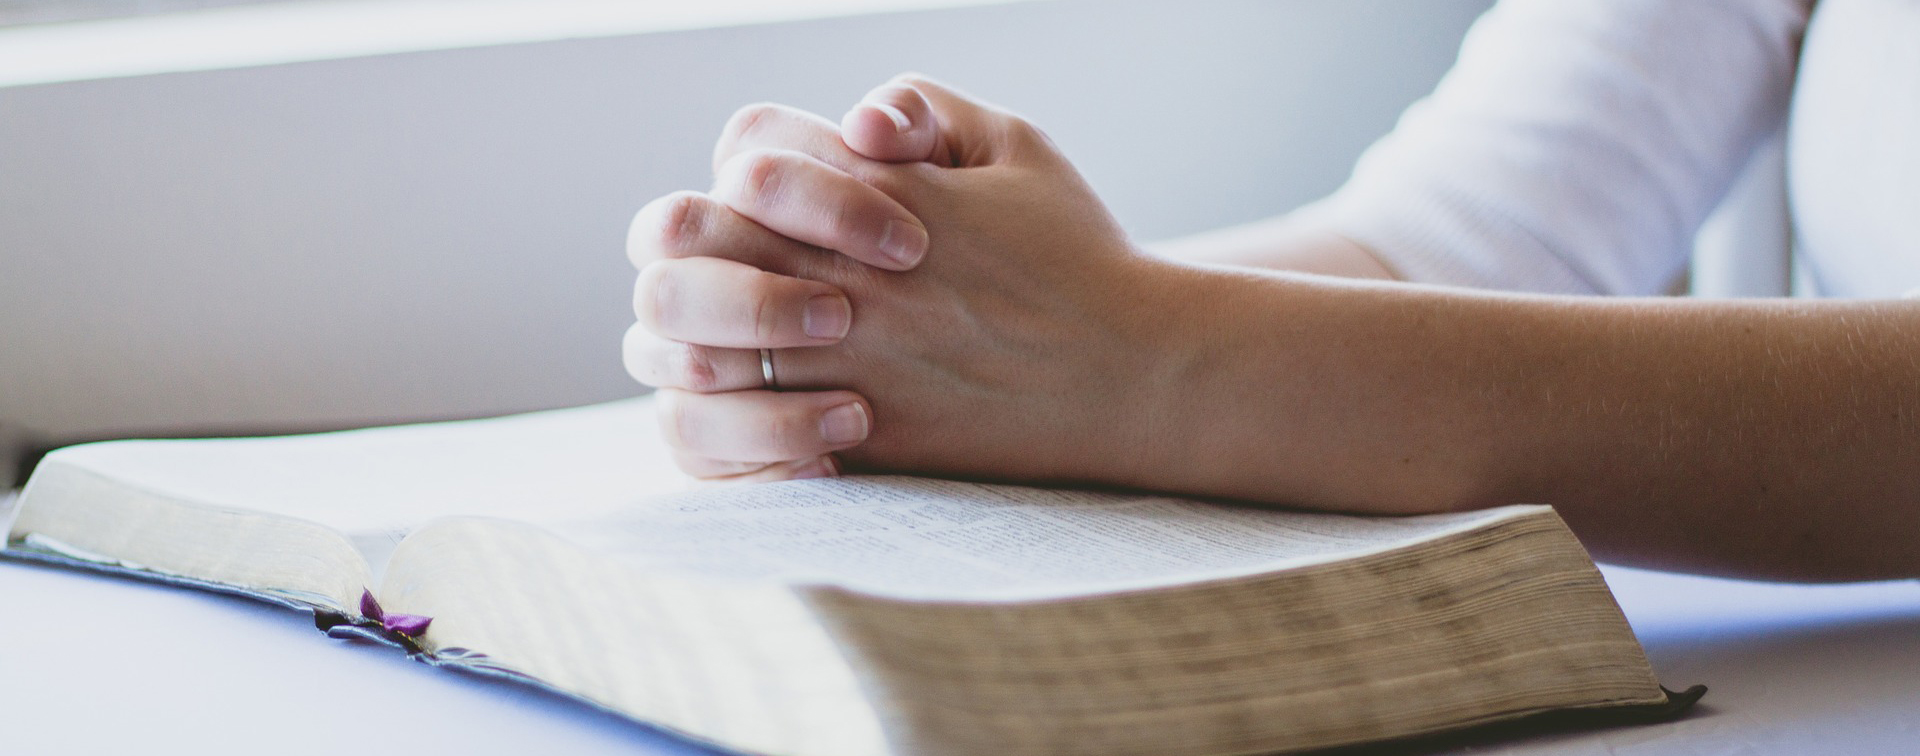 Naisen kädet rukouksessa Raamatun päällä.